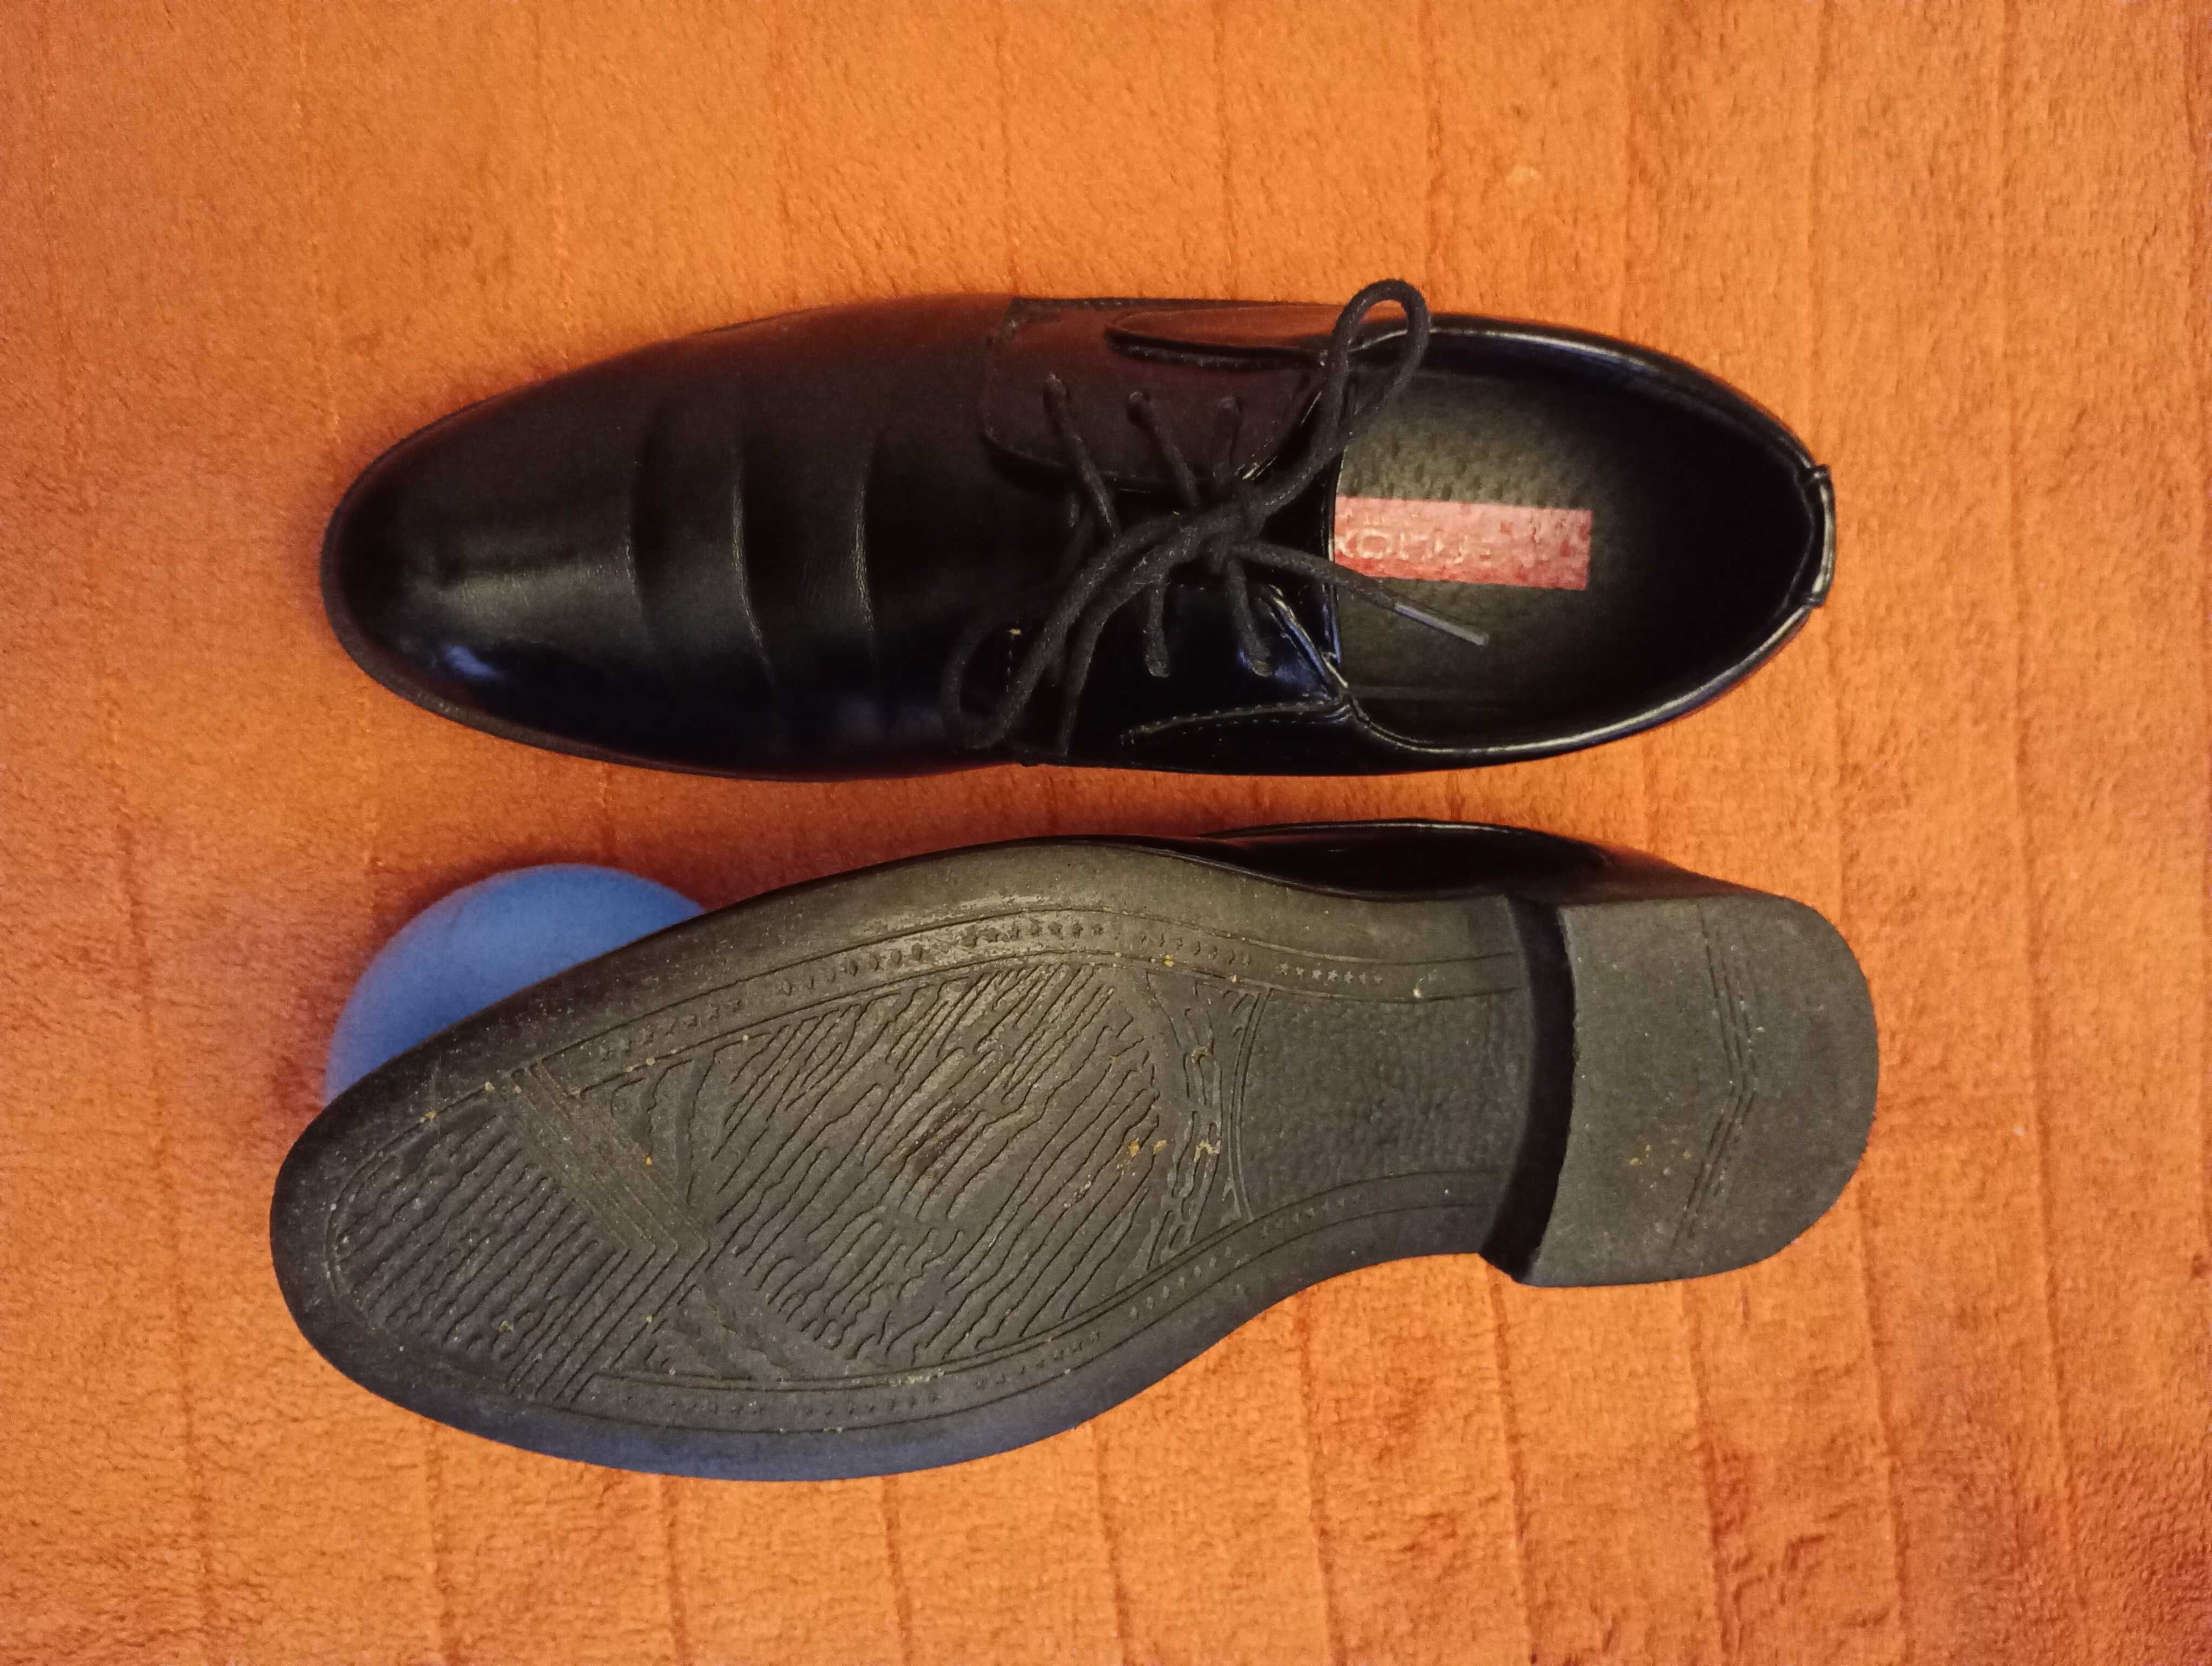 Komunia buty lakierki chłopięce półbuty męskie, r. 37, wkł. 25 cm